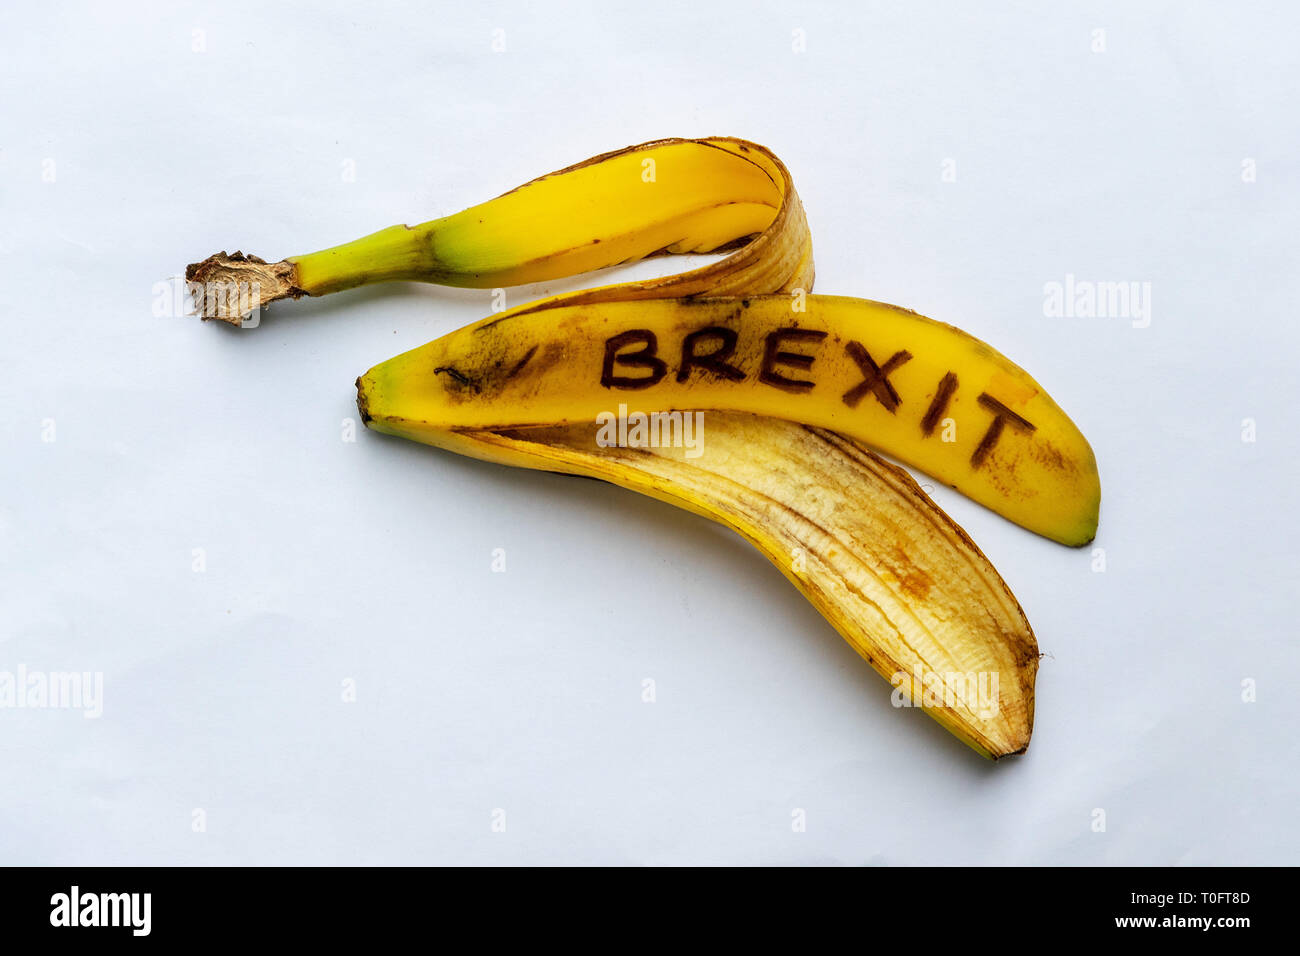 Une peau de banane, qui représente la façon Brexit a été traité. Mme Mays, accord qui n'a pas réussi à obtenir par l'entremise du Parlement, et une extension possible. Banque D'Images